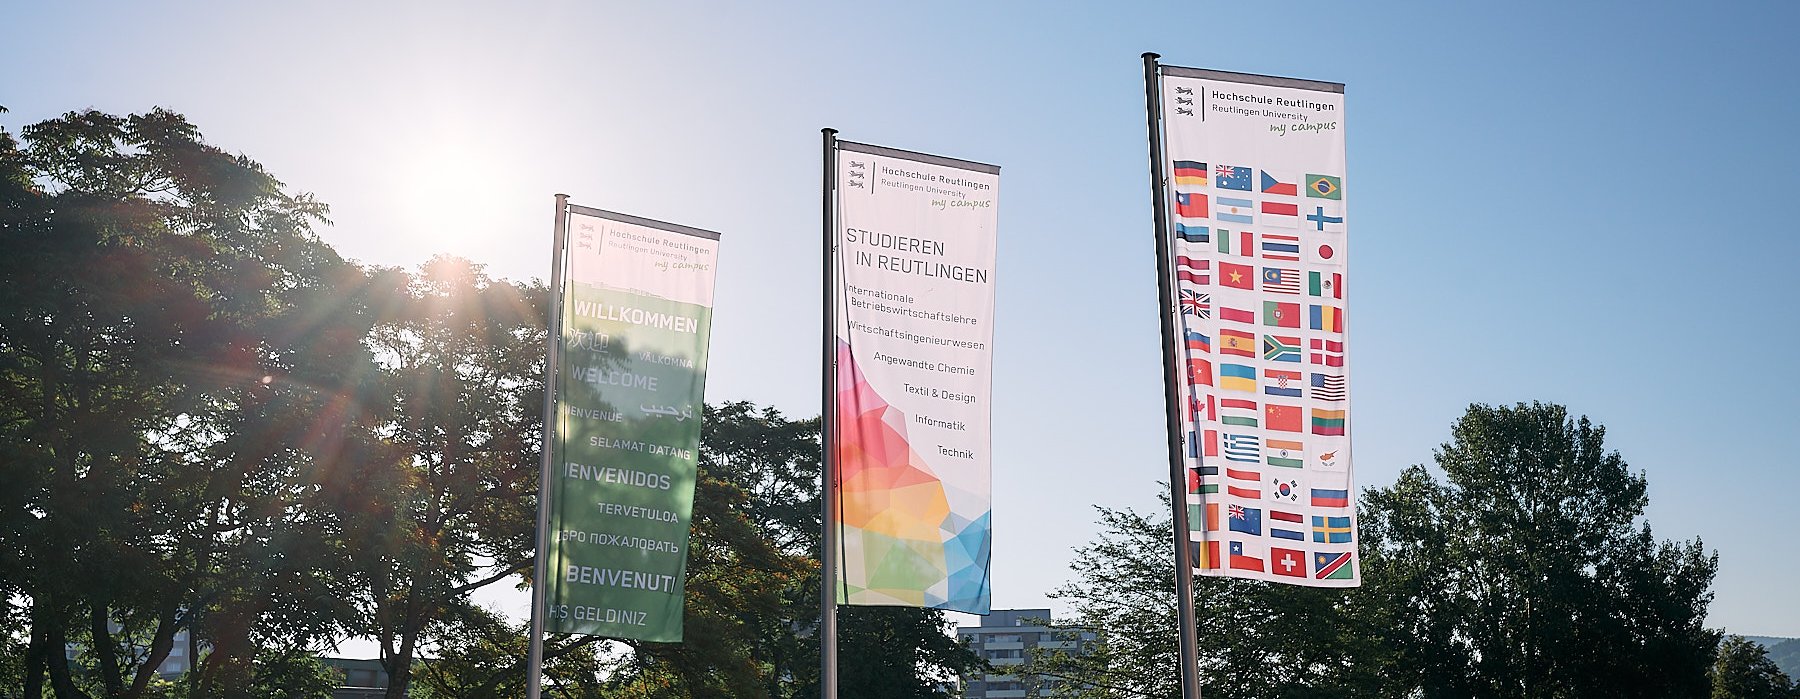 Verschiedene bunte Fahnen der Hochschule Reutlingen begrüßen Besucher am Campus